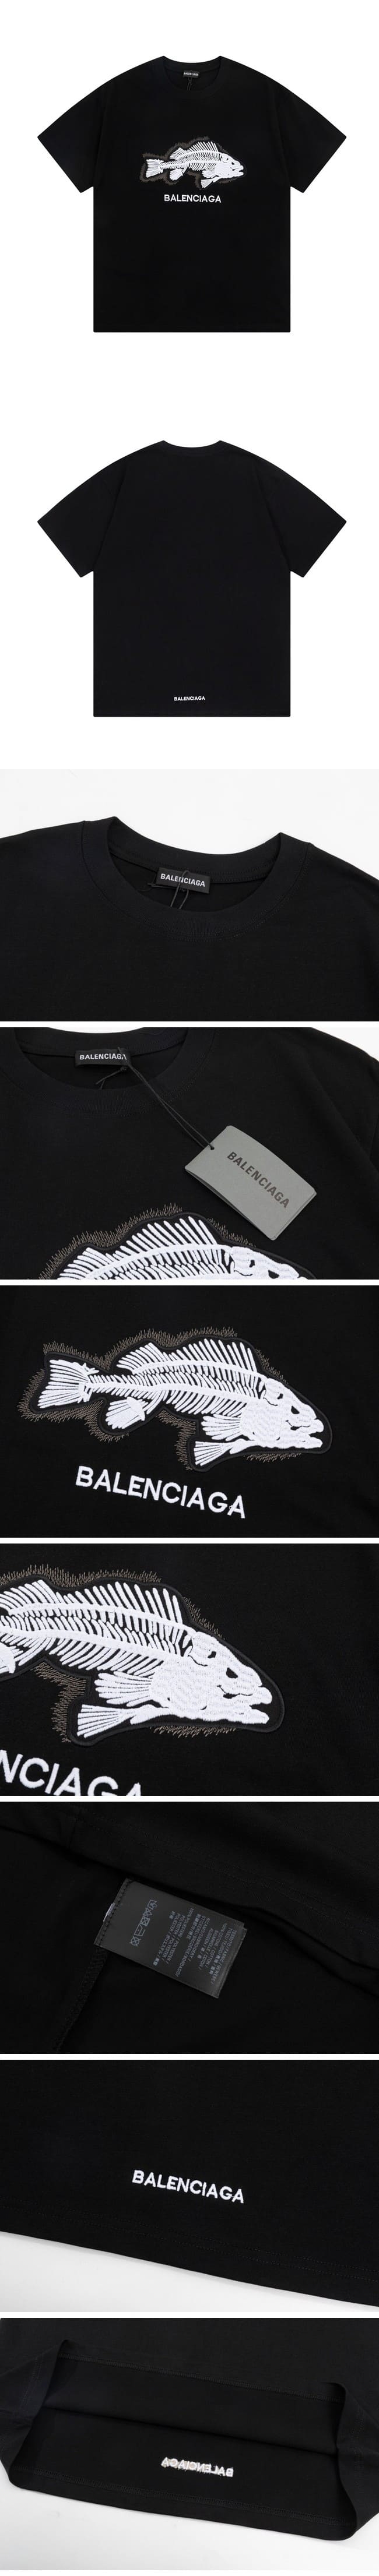 Balenciaga Fishbone Tee Black バレンシアガ フィッシュボーン Tシャツ ブラック